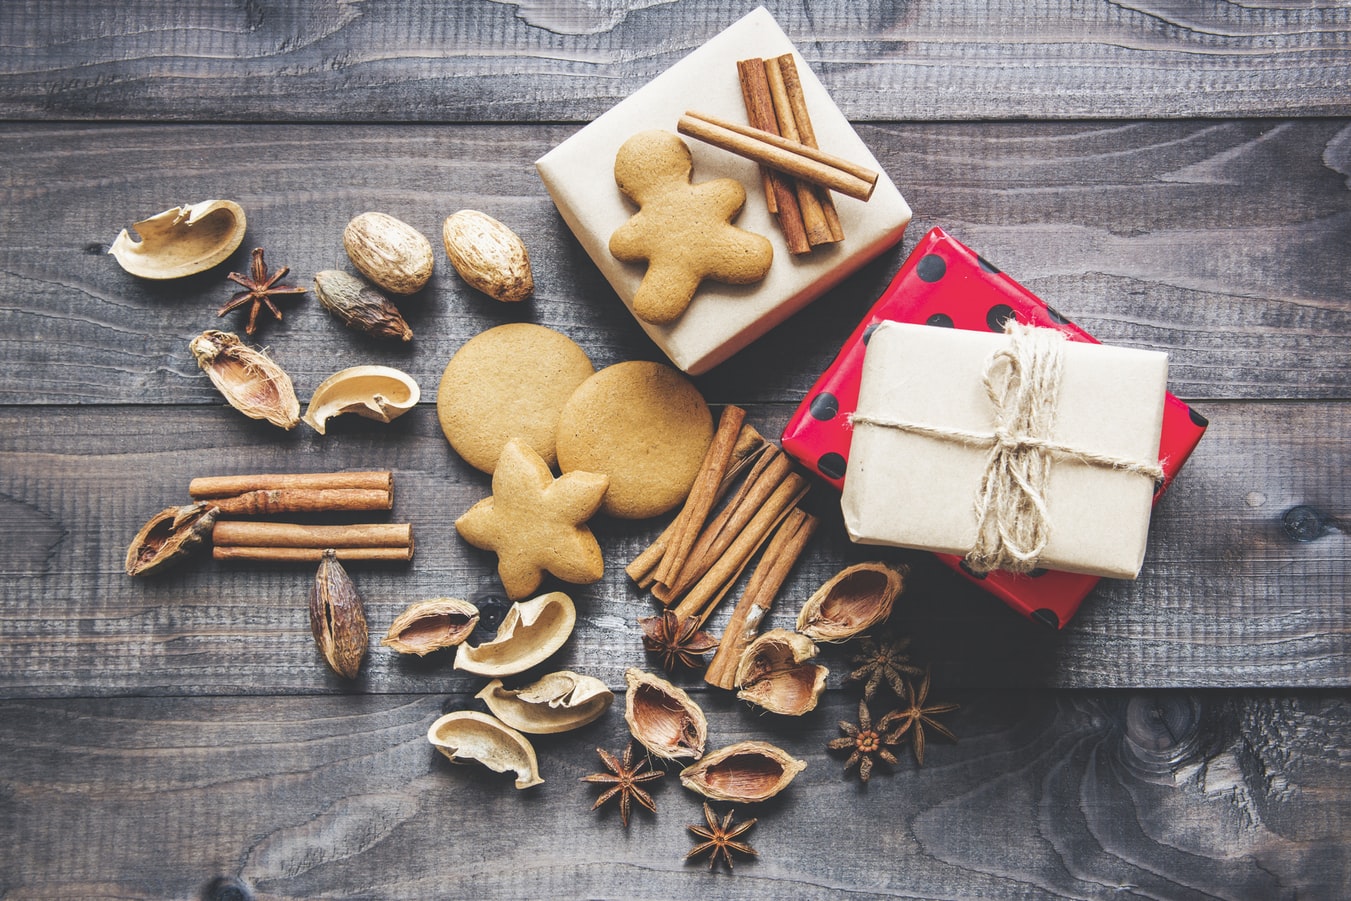 Μελομακάρονα εύκολα και γρήγορα: Συνταγή για το αγαπημένο γλυκό των Χριστουγέννων